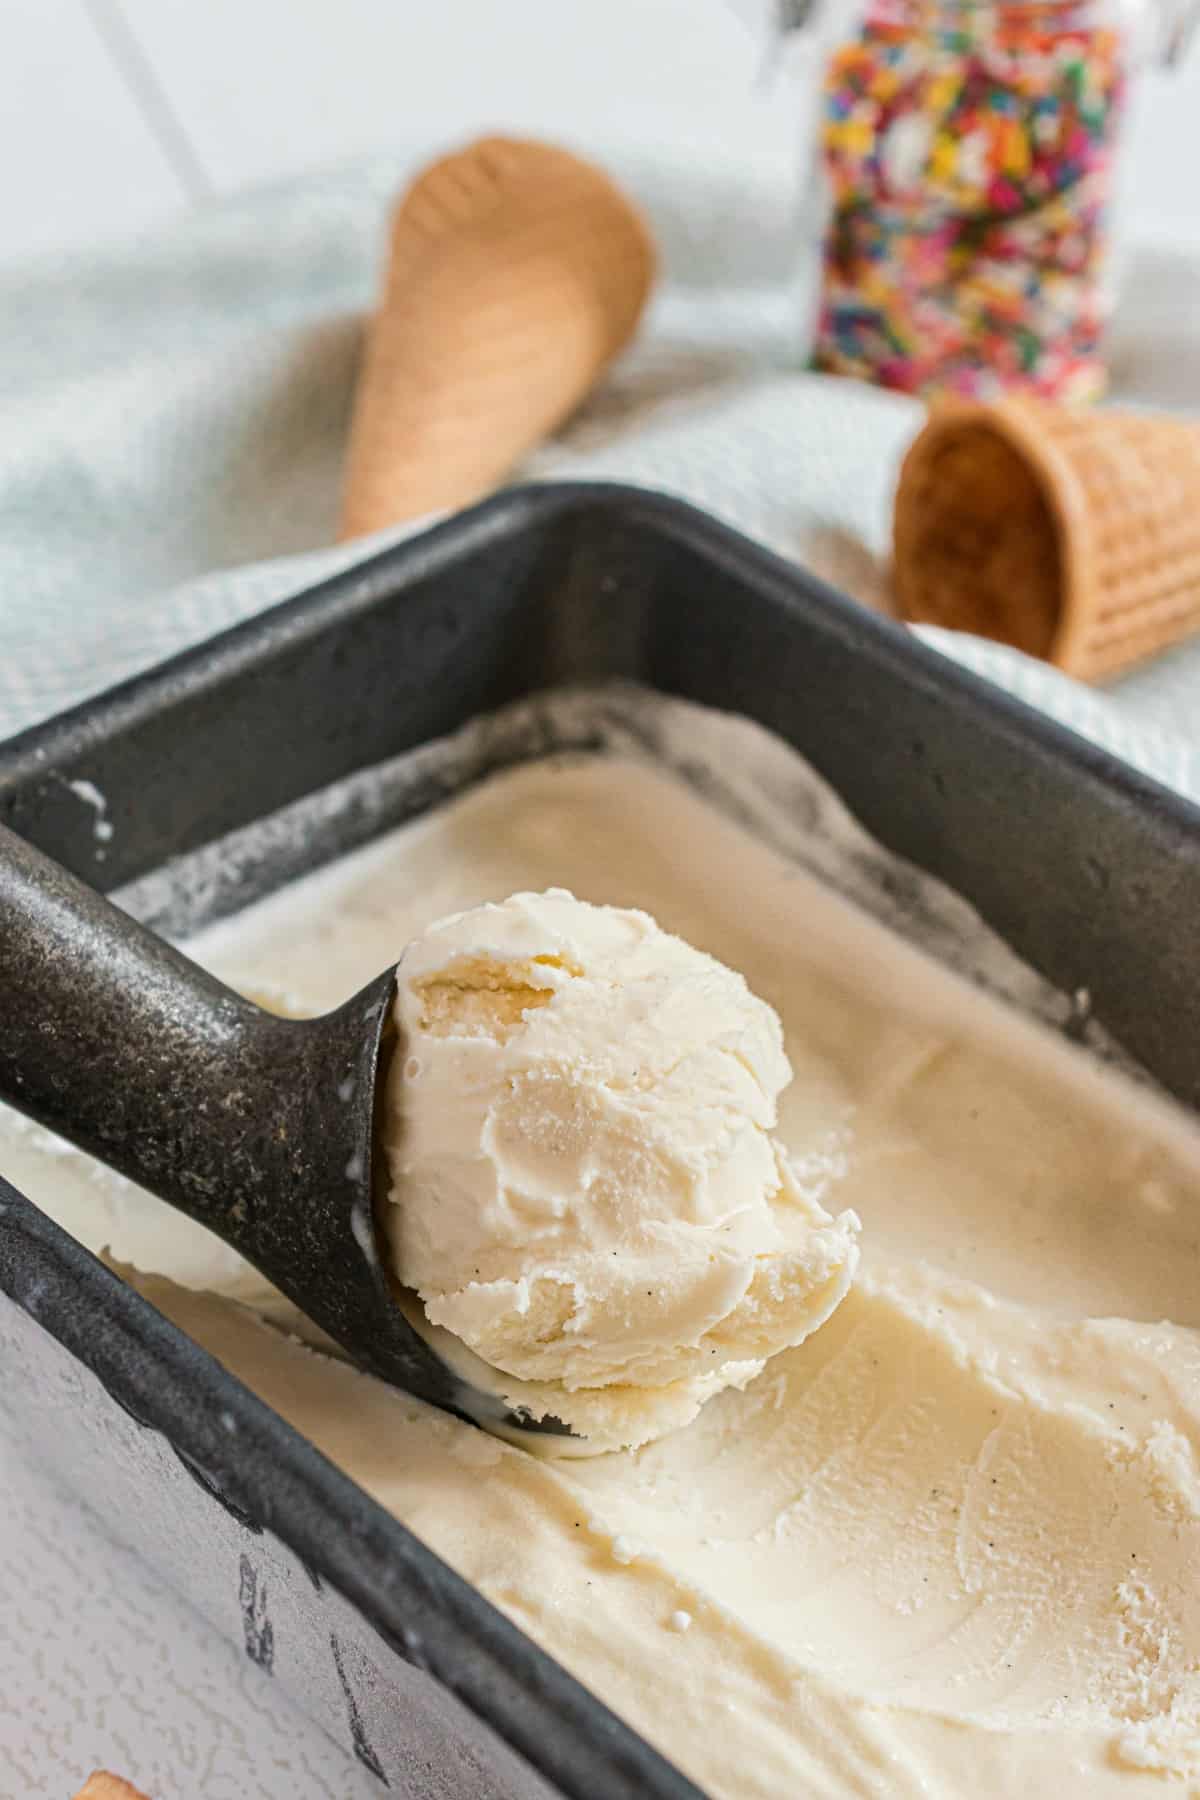 Homemade Vanilla Ice Cream Recipe: How to Make It